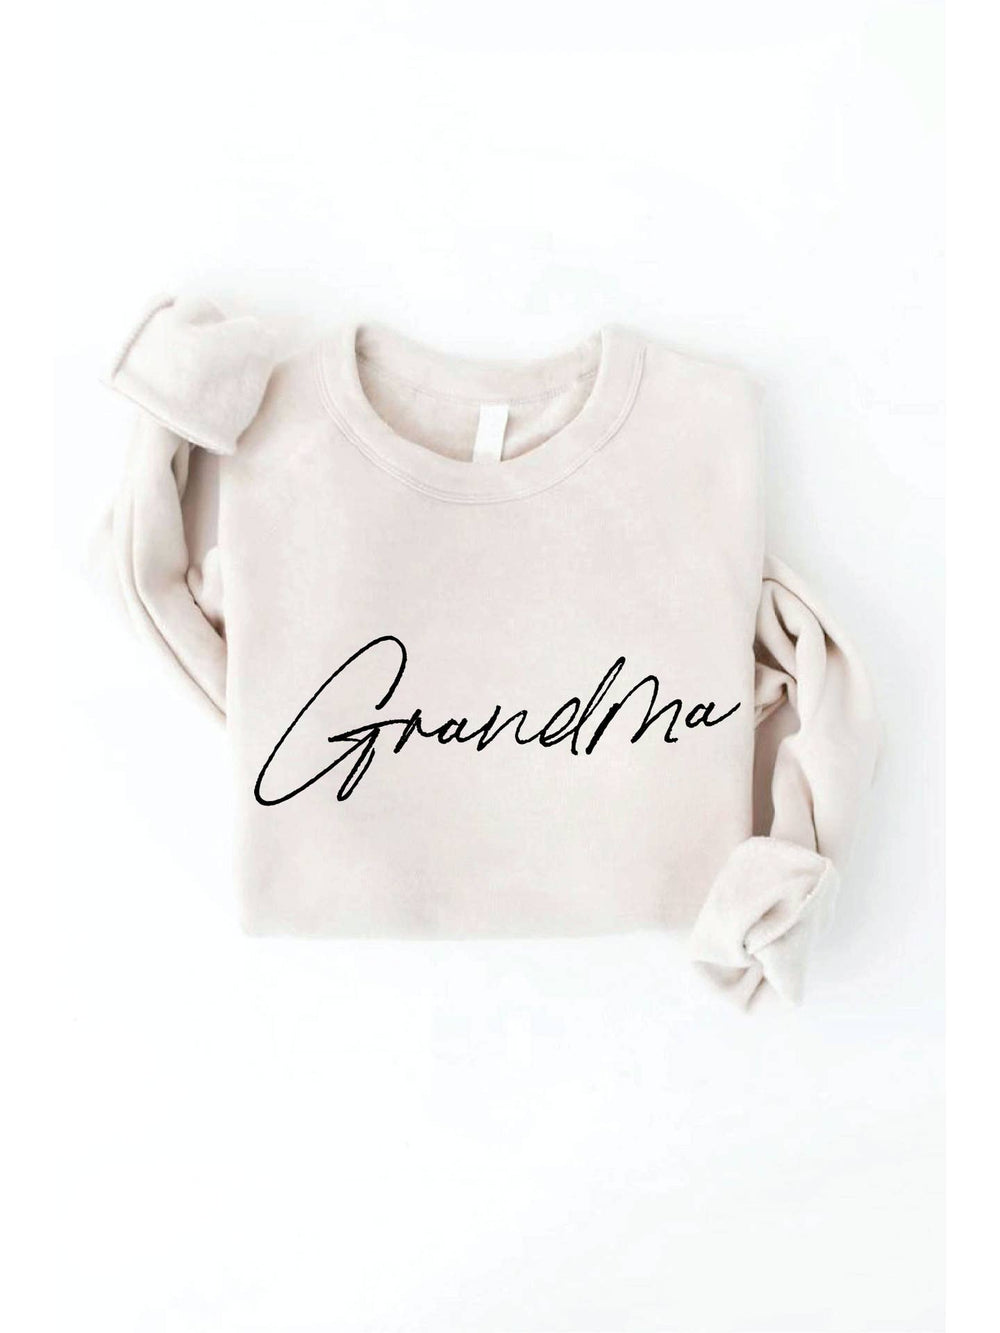 Grandma Graphic Sweatshirt